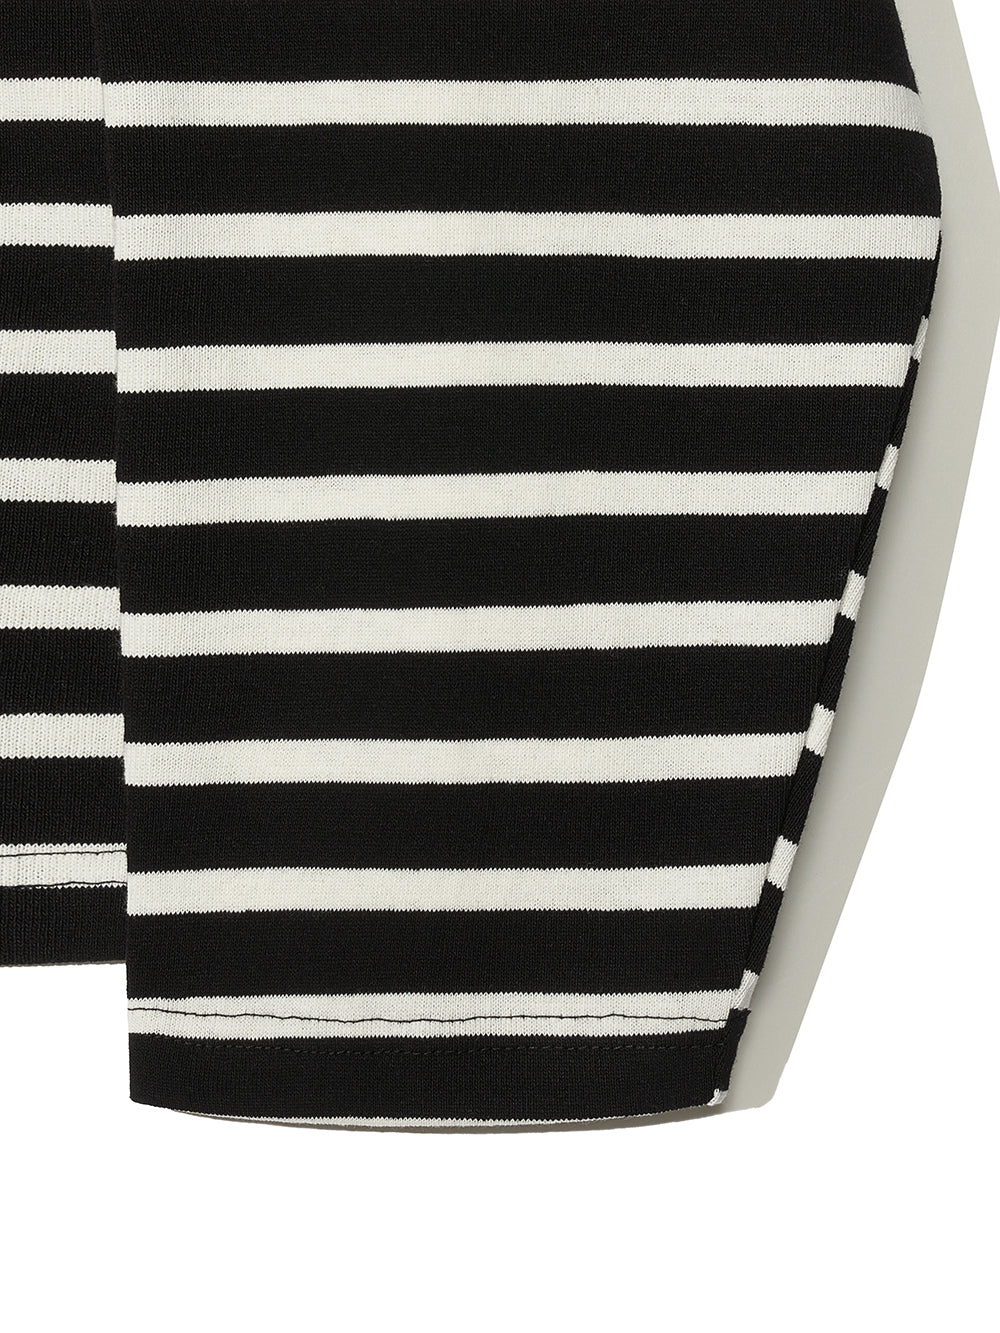 Stripe Long Sleeve in Black